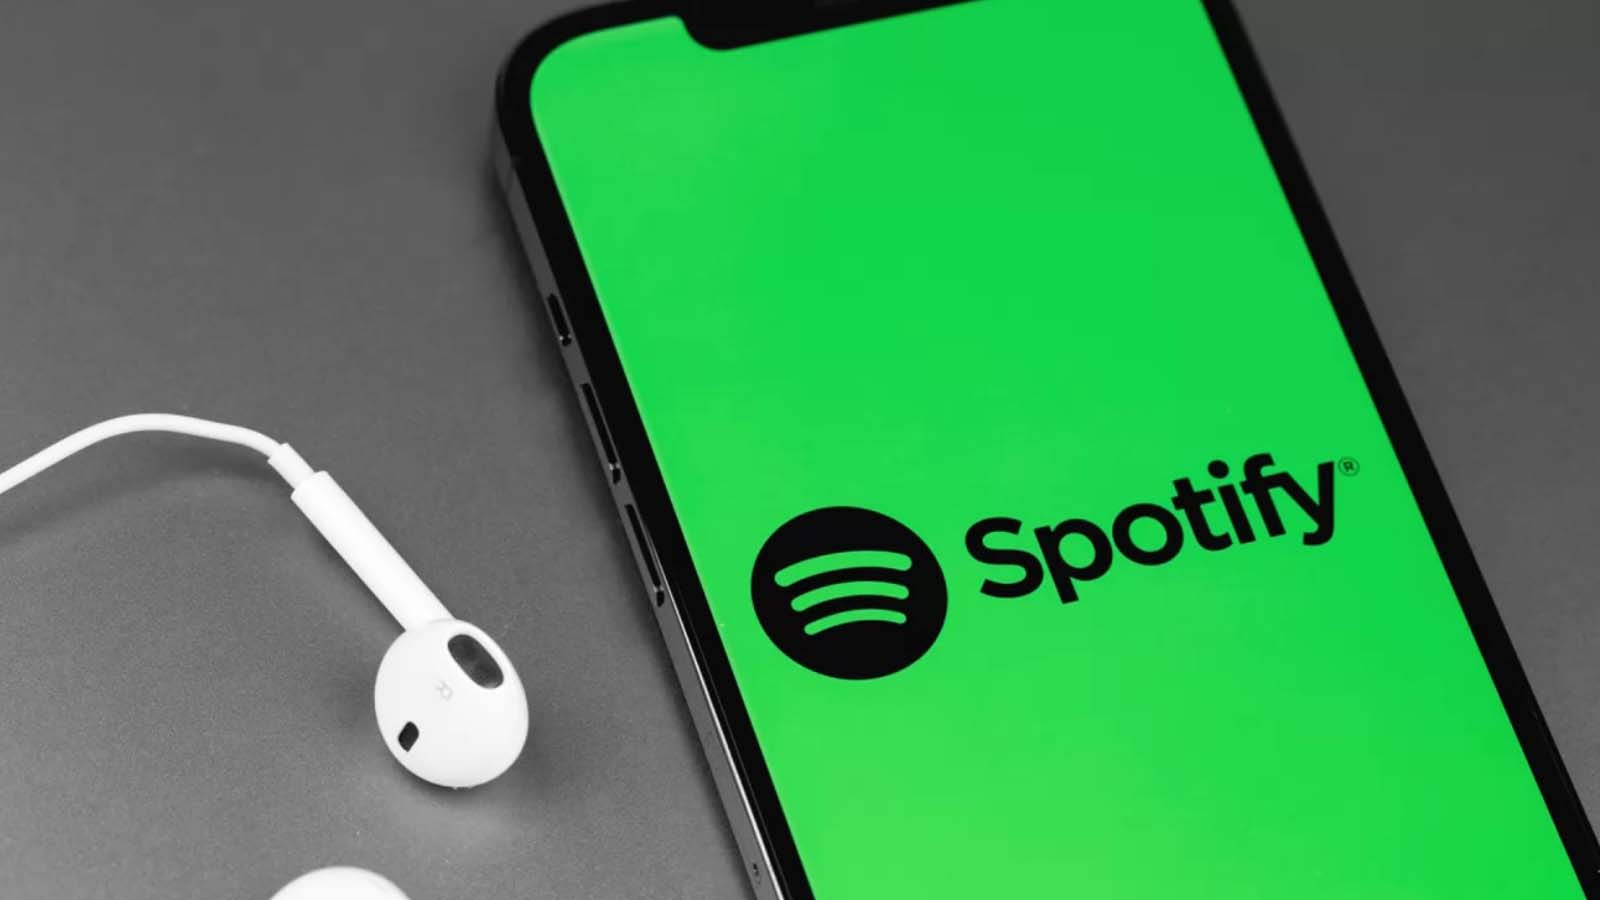 La crescita straordinaria delle sottoscrizioni Spotify Premium nel quarto trimestre